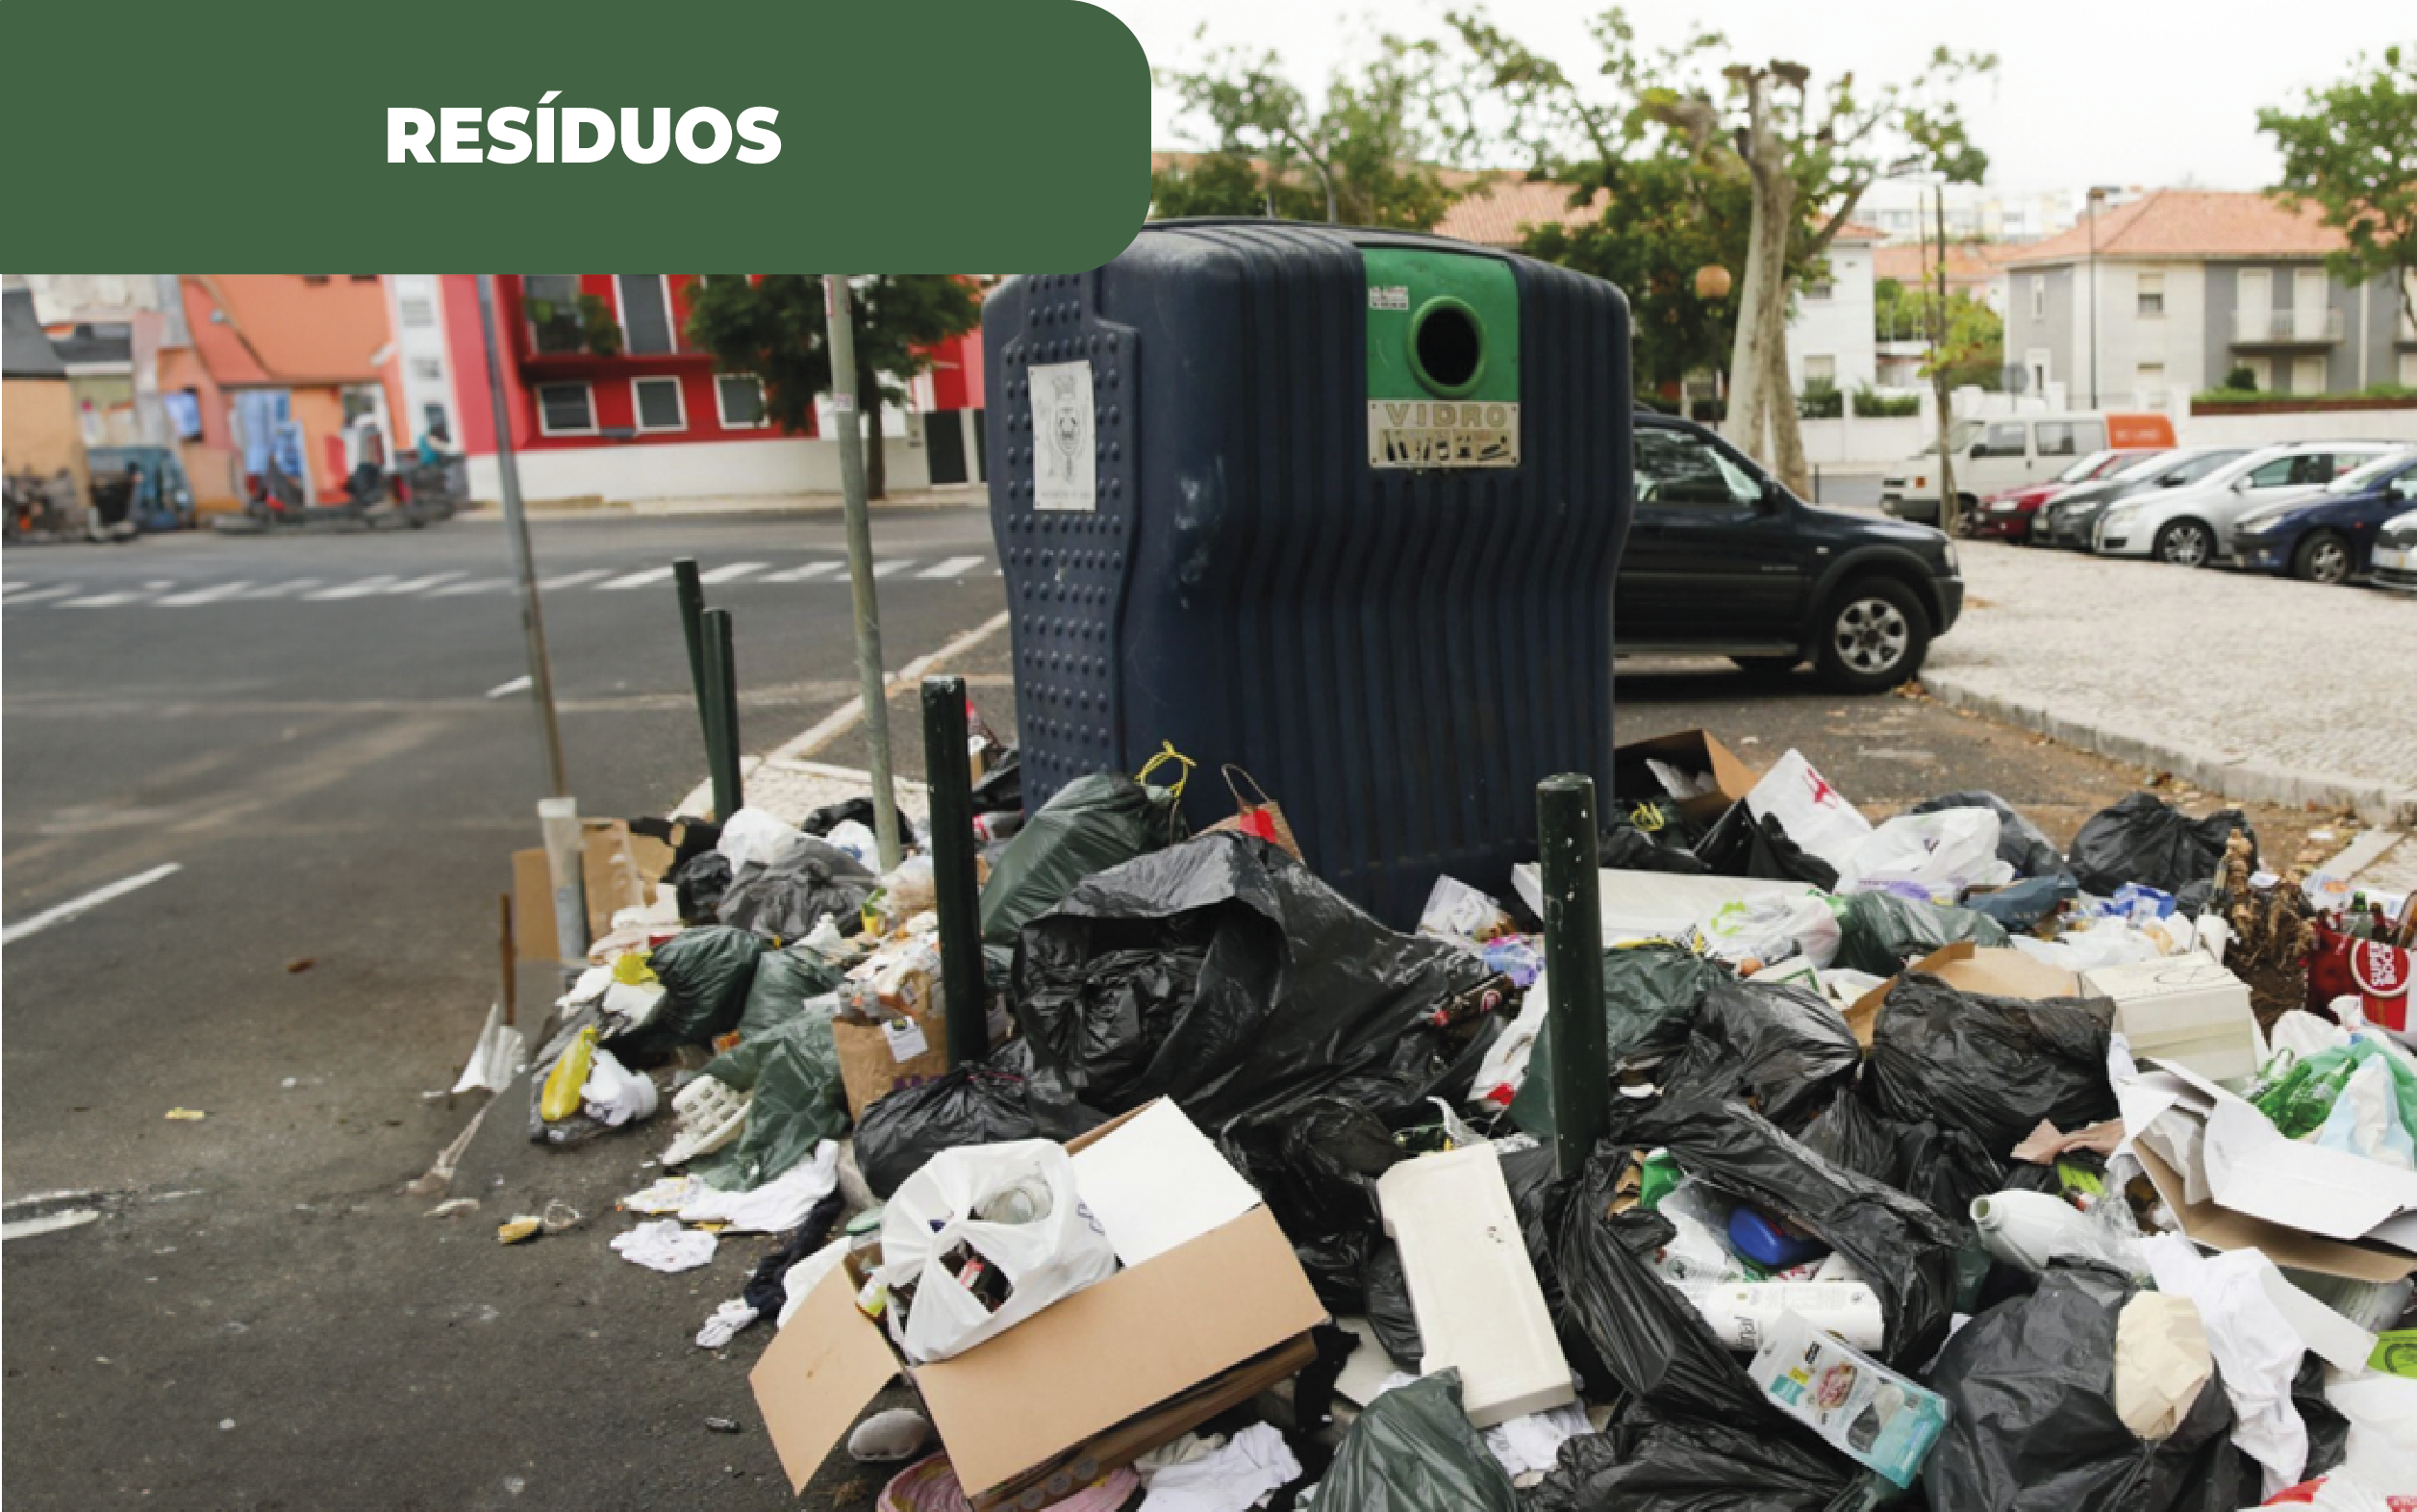 Imagem colorida de ecoponto com excesso de sacos e descarte de resíduos. A imagem ilustra parte da realidade nacional, na qual as metas para resíduos estão abaixo do necessário para cumprirem-se as leis previstas.